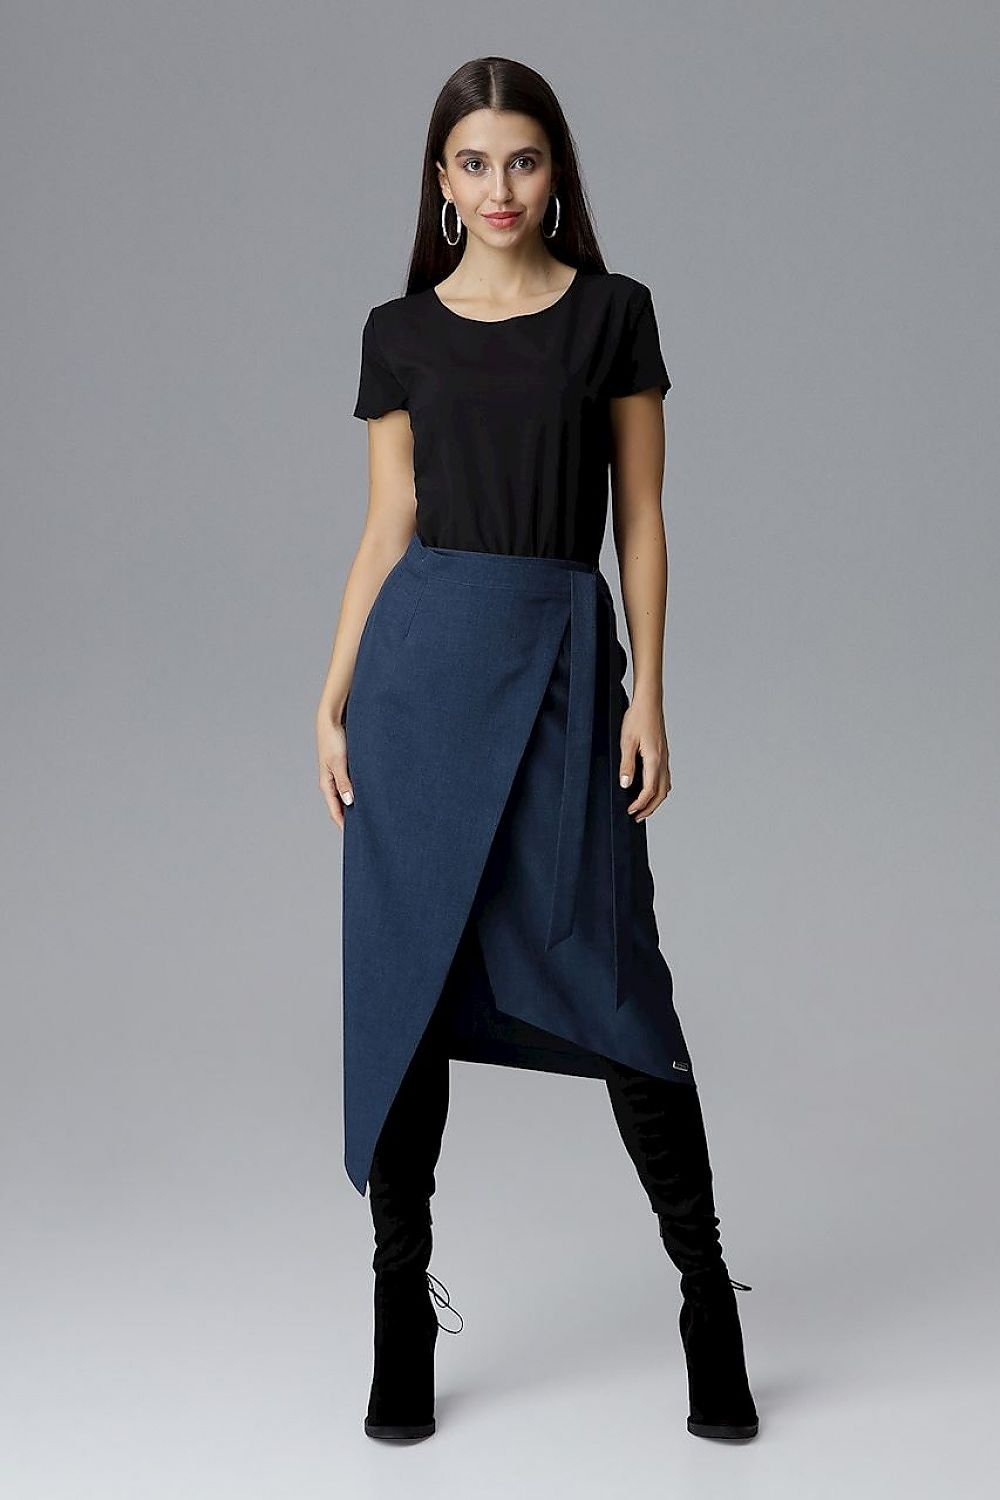 Jupe asymétrique longue bleue tendance pour un look moderne et original, idéal pour une silhouette élégante.